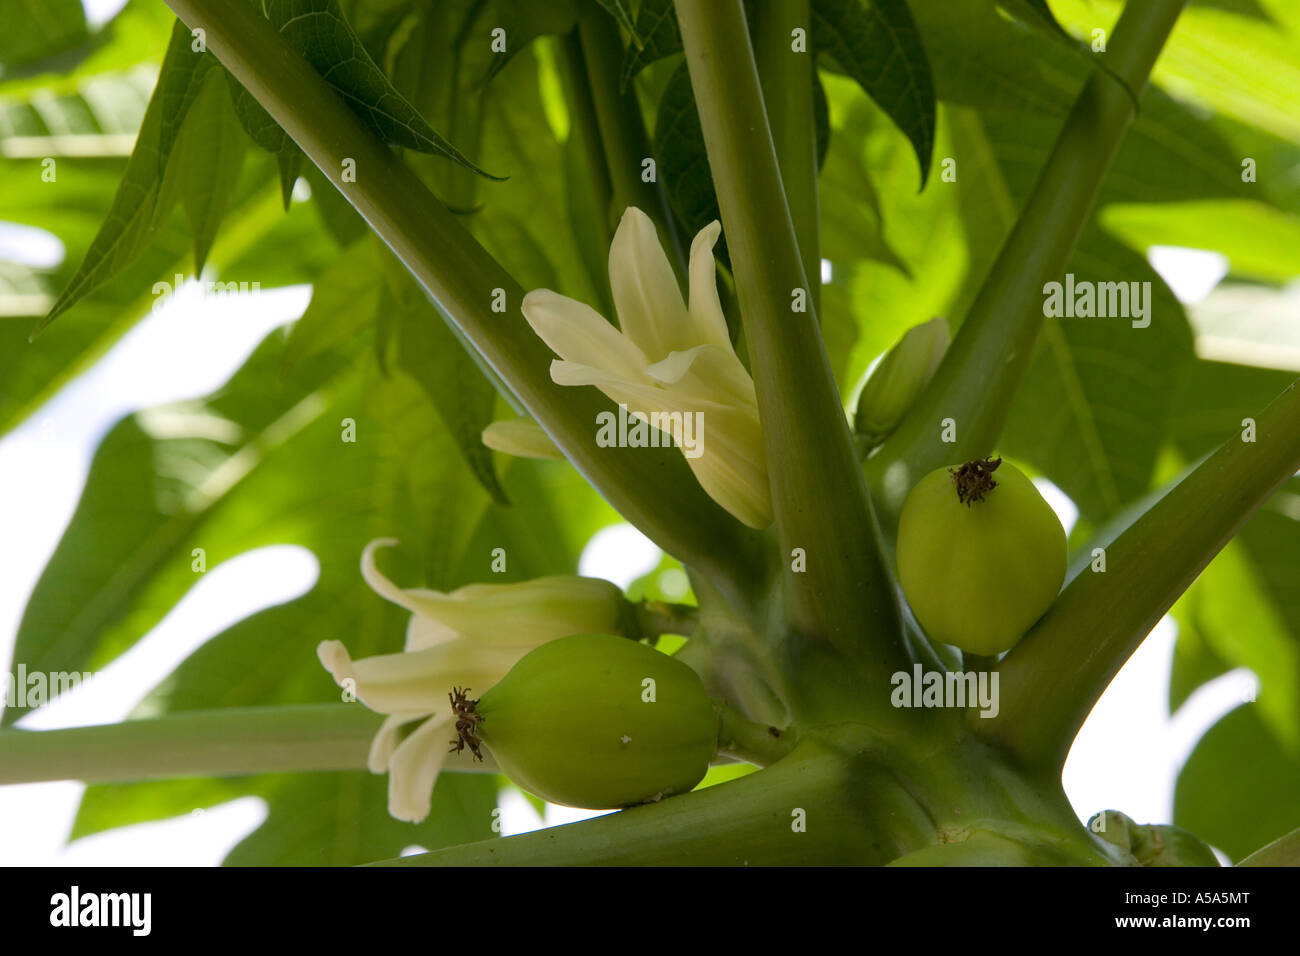 Carica papaya fleurs et fruits pour mineurs Banque D'Images